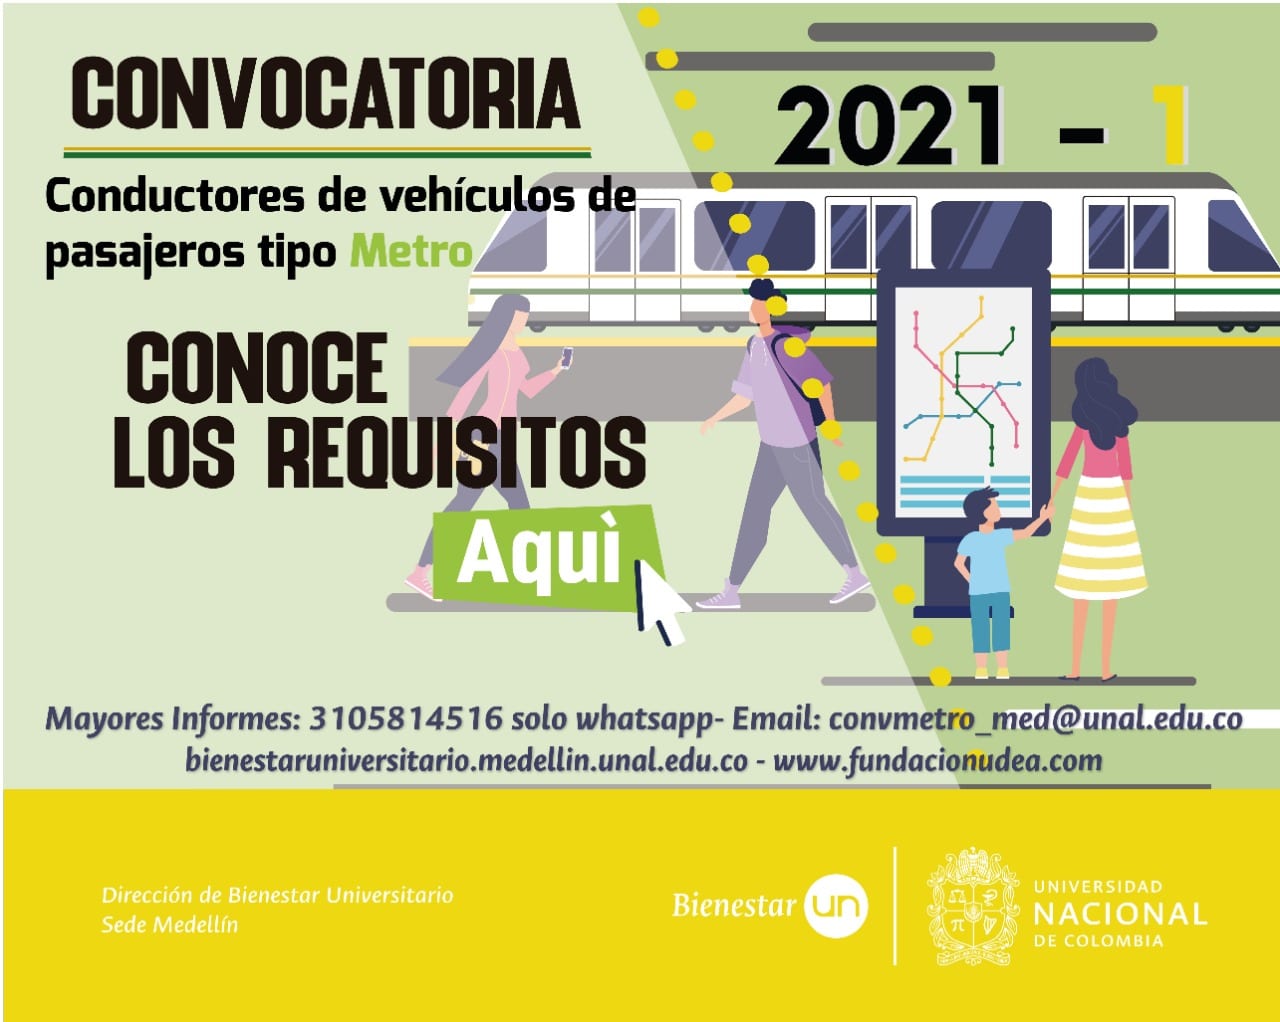 Convocatoria: conductores de vehículos de pasajeros tipo metro